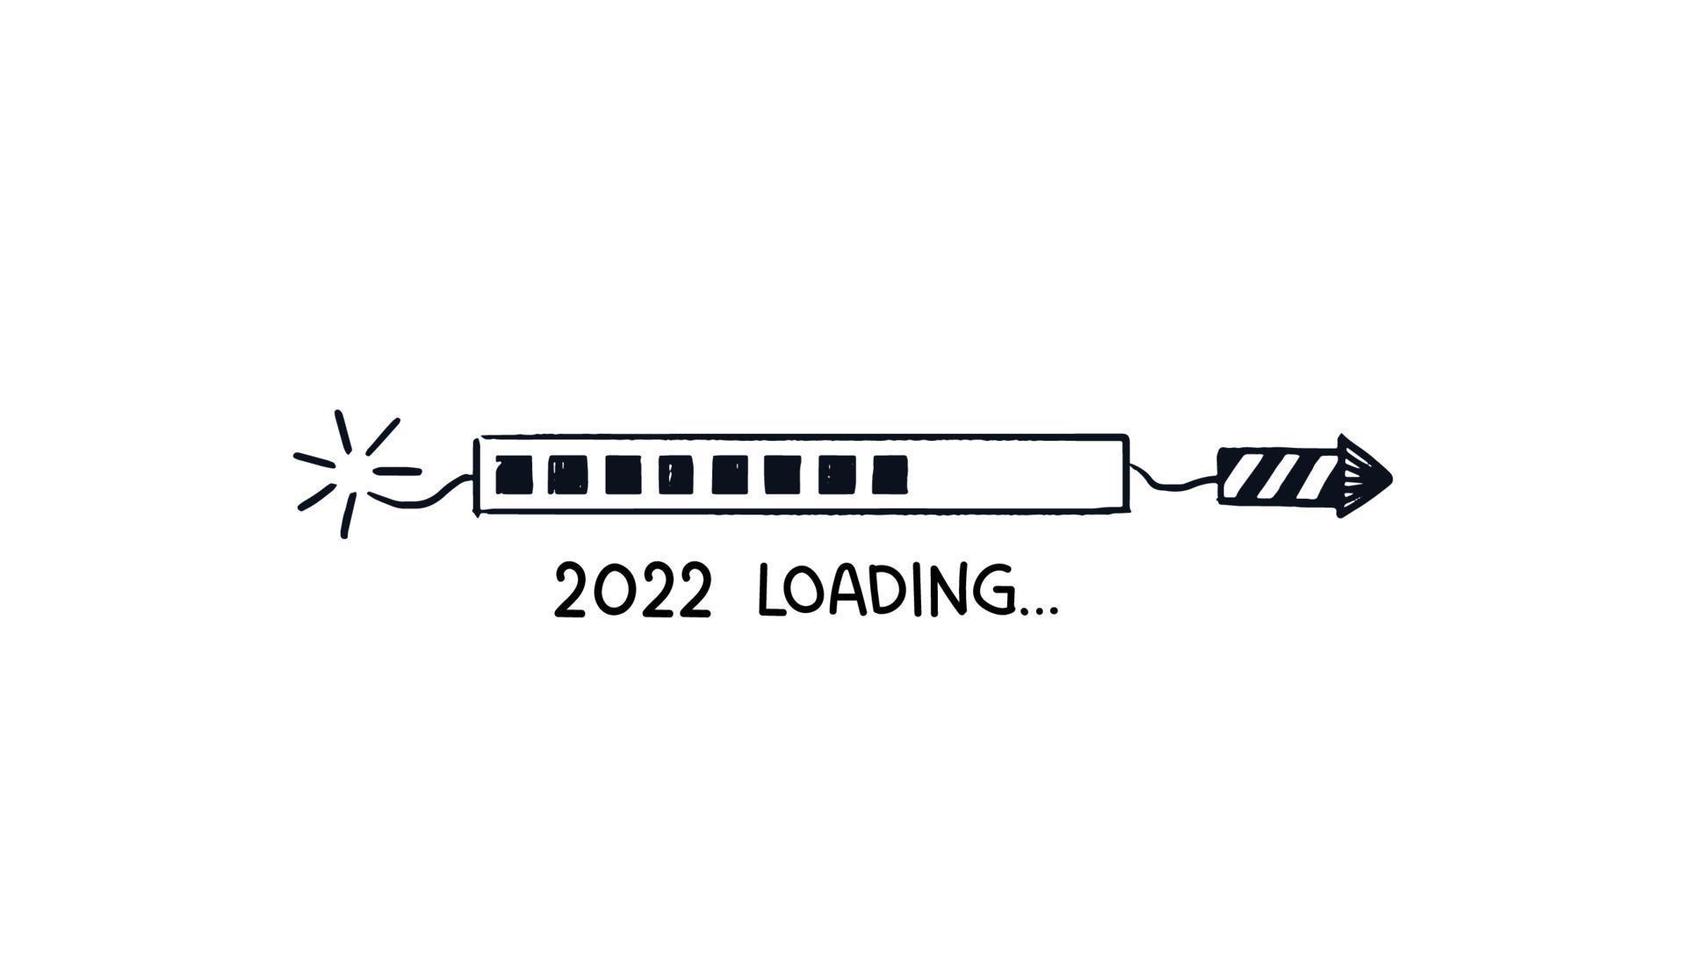 Barre de chargement de fusée 2022. barre de téléchargement doodle pétard rayé peint avec pointe pointue. croquis dessiné à la main de vecteur avec citation d'en bas isolé sur fond blanc.